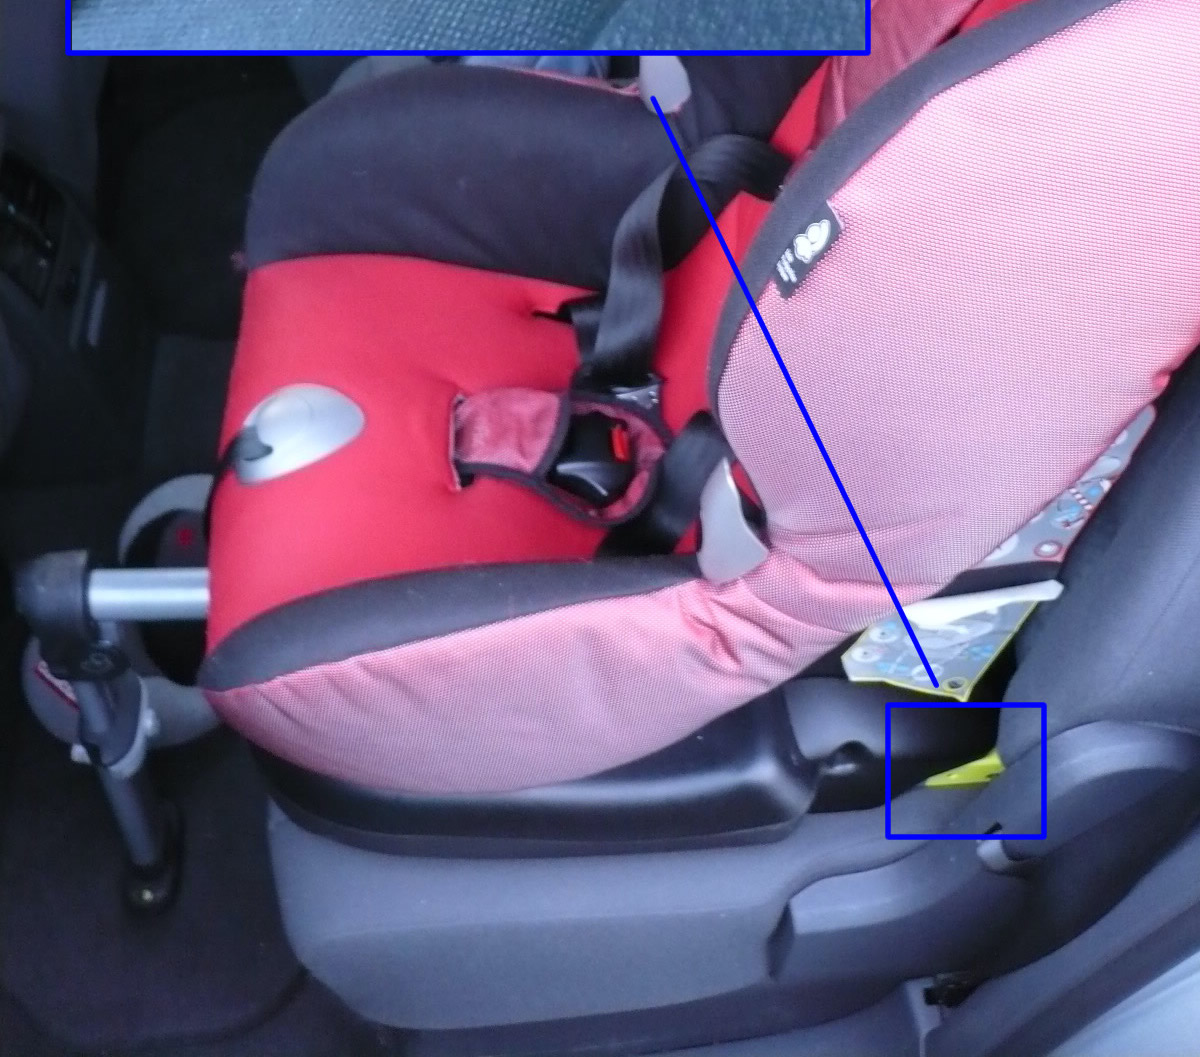 Isofix für Kindersitze & Babyschalen – lässt sich Isofix nachrüsten?